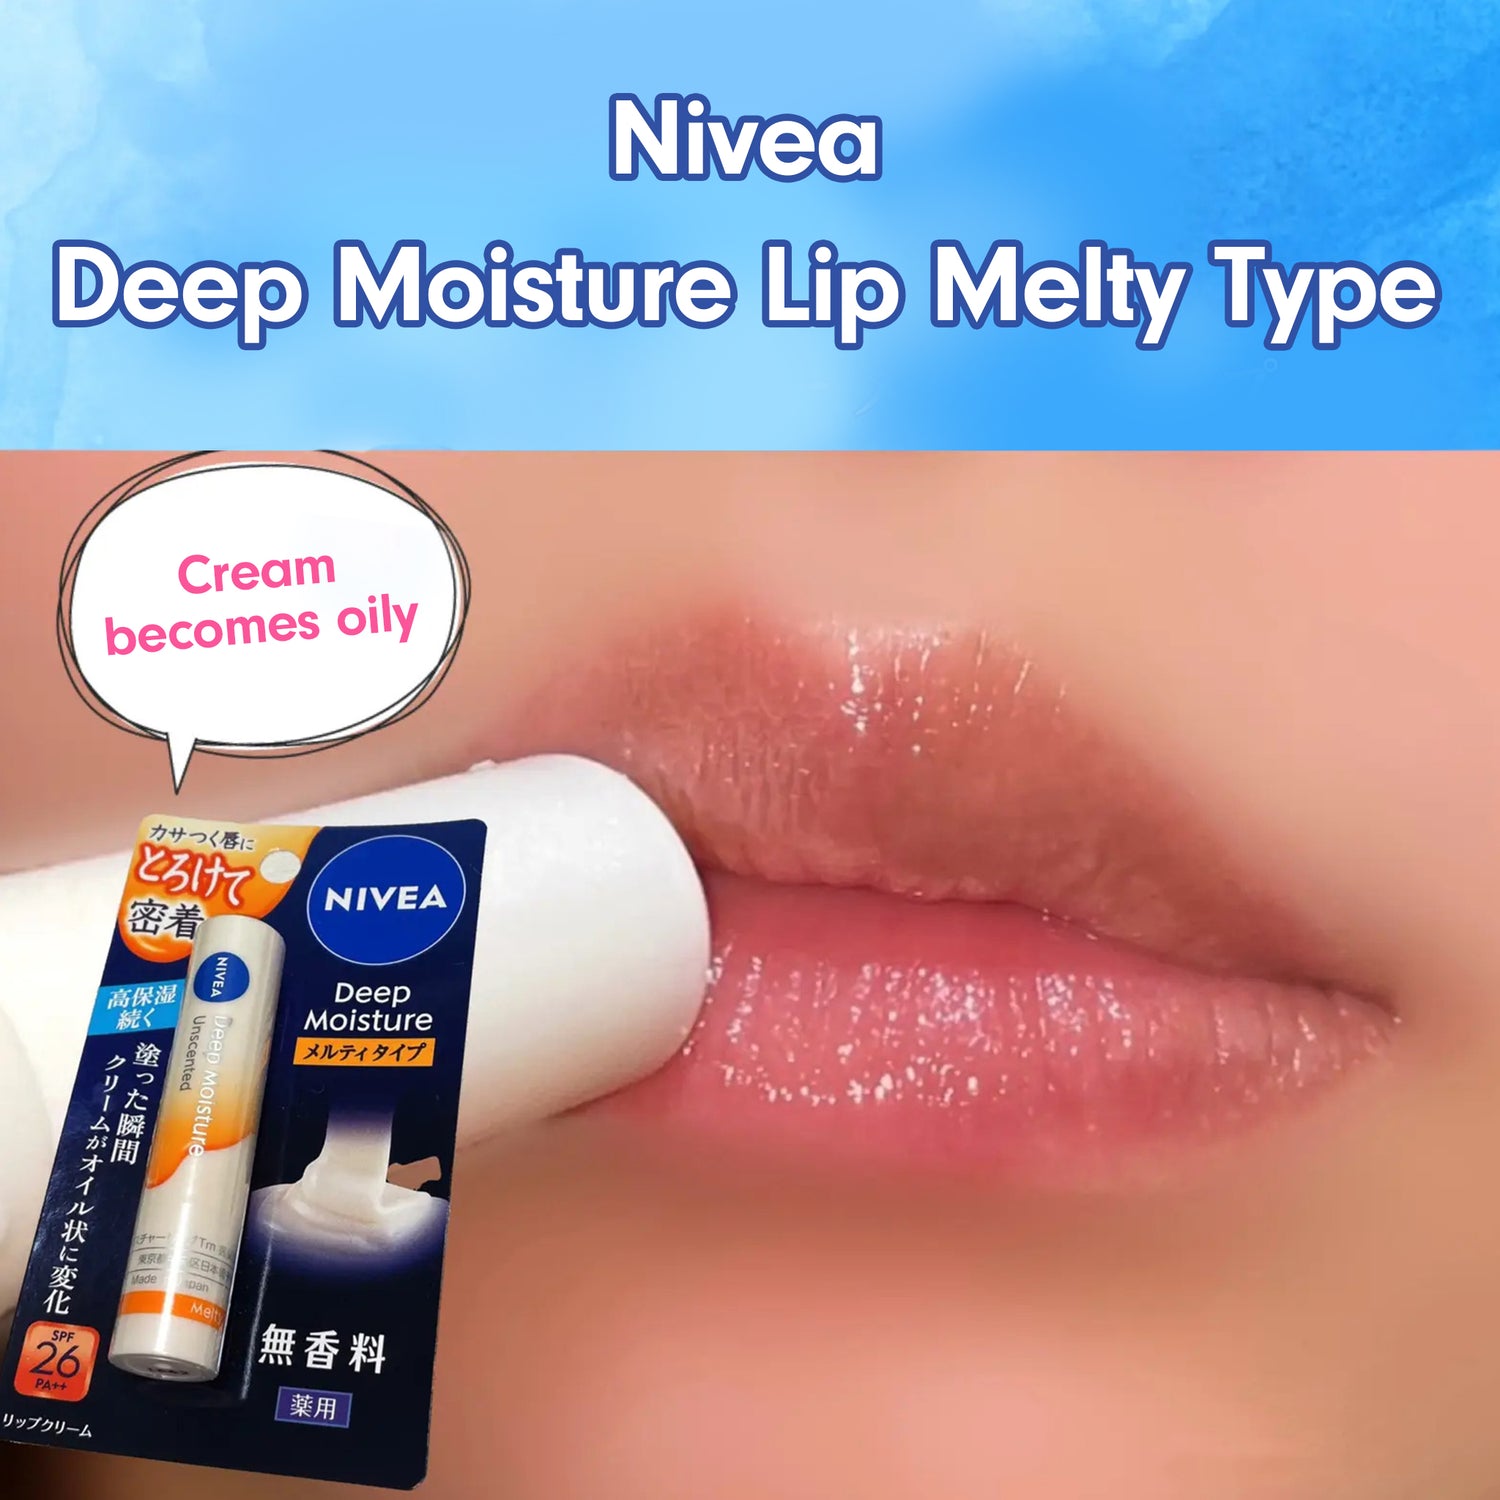 NIVEA Deep Moisture Lip Melty Type